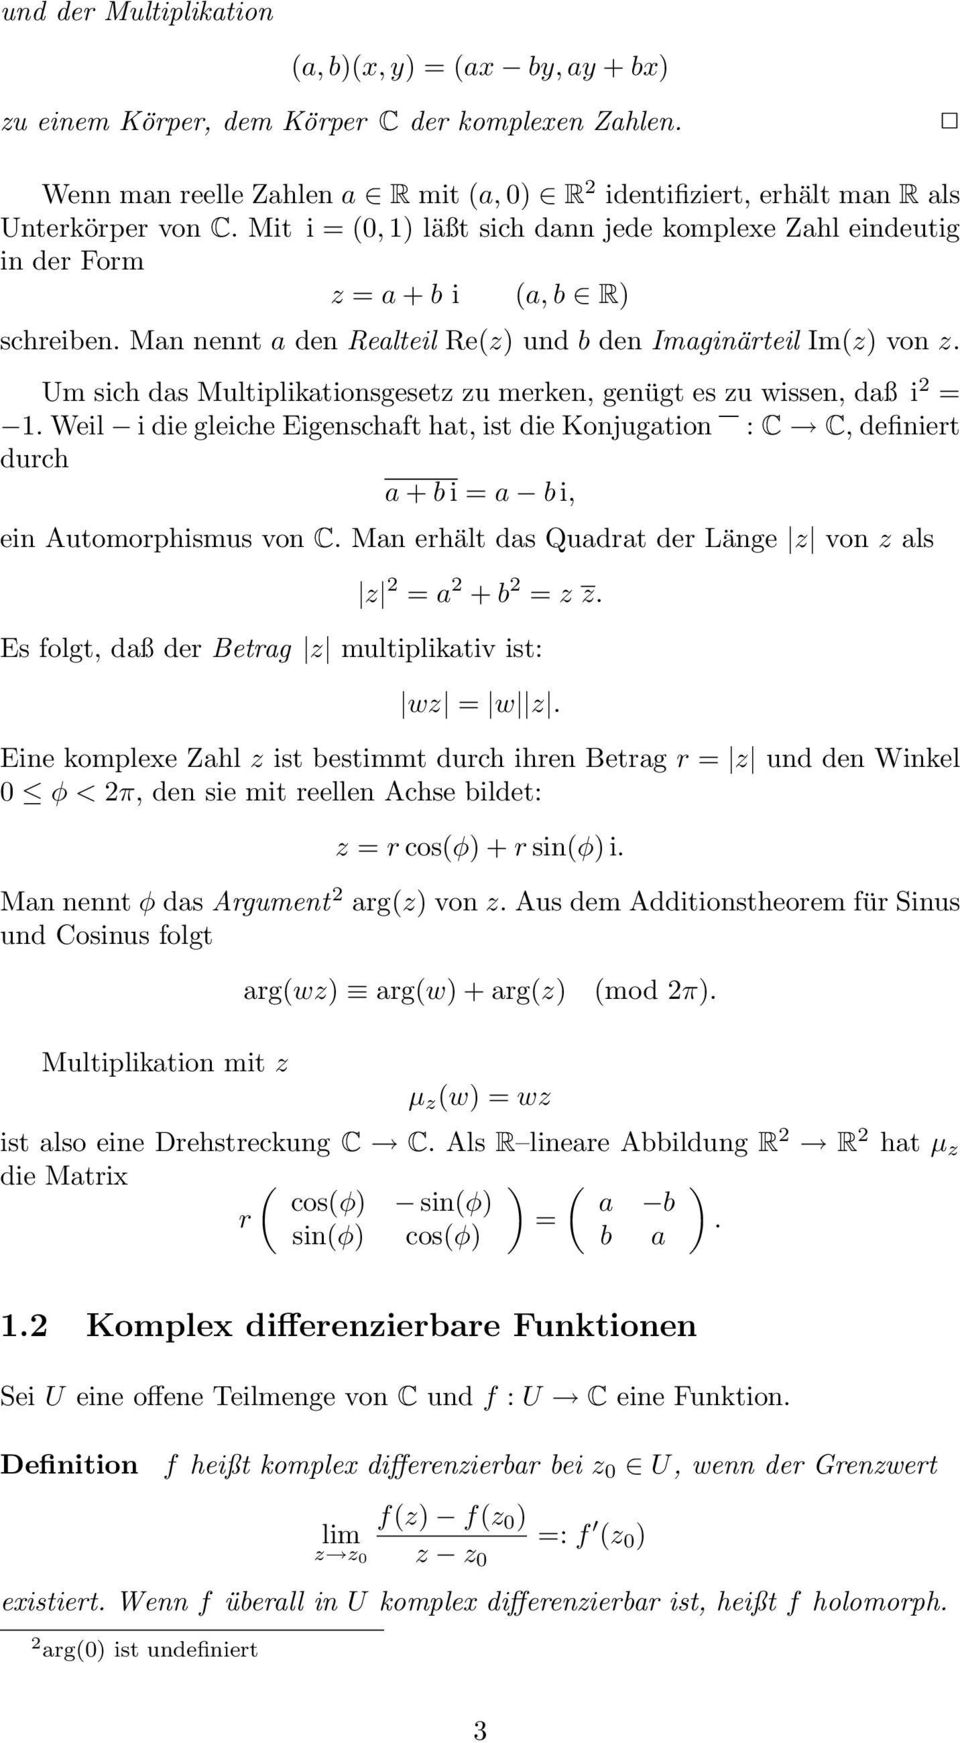 Einfuhrung In Die Funktionentheorie 1 Pdf Free Download